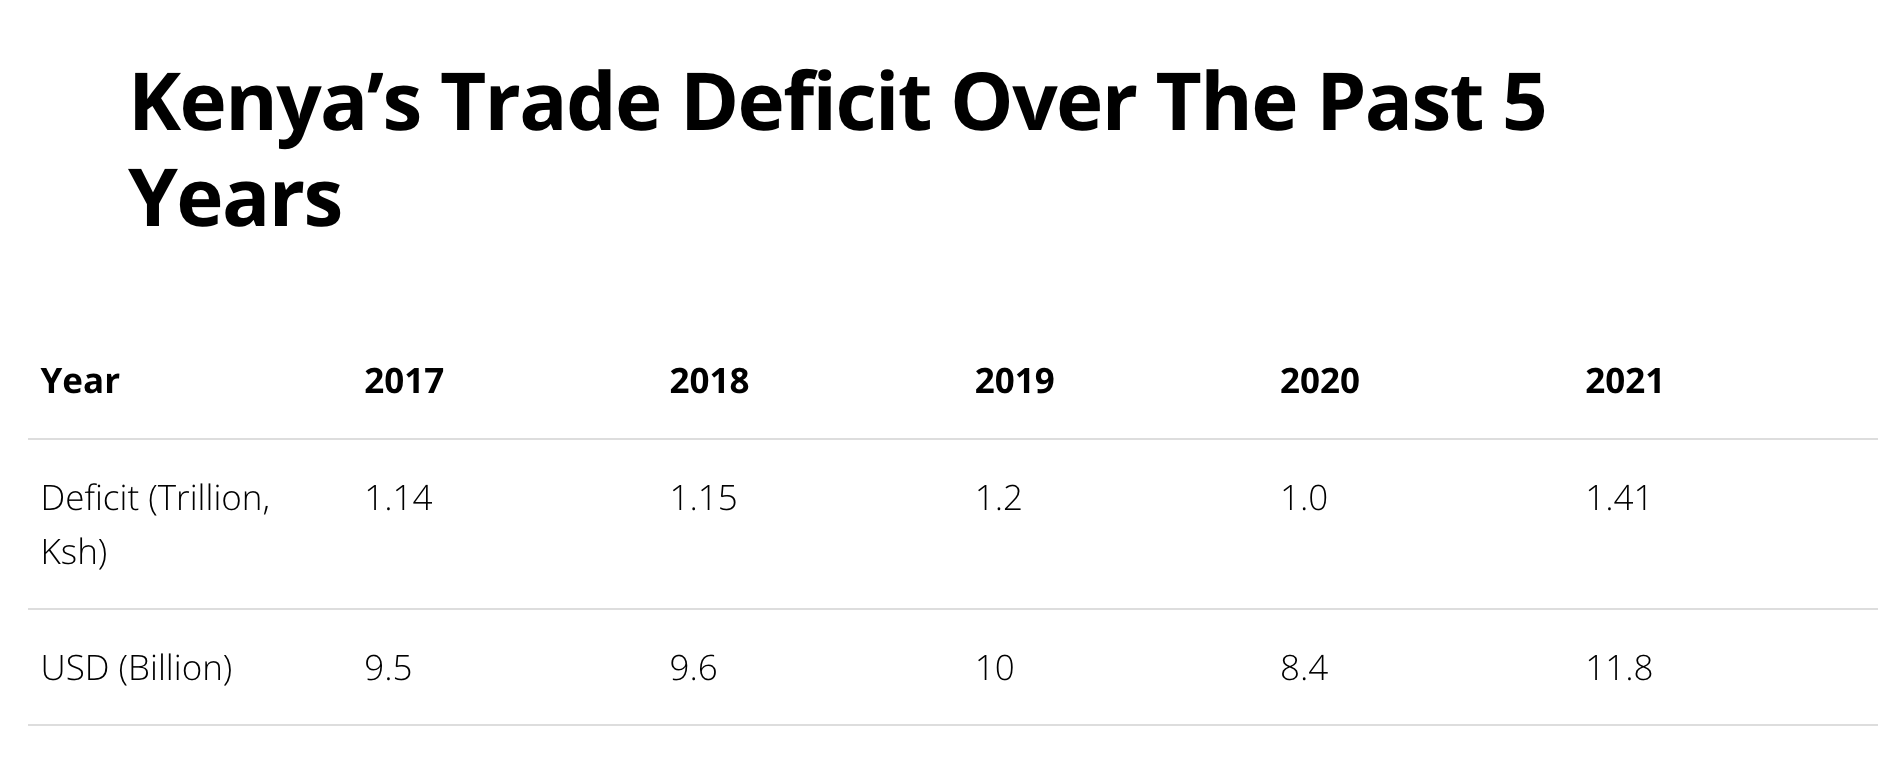 Tabelle zum Handelsdefizit von Kenia